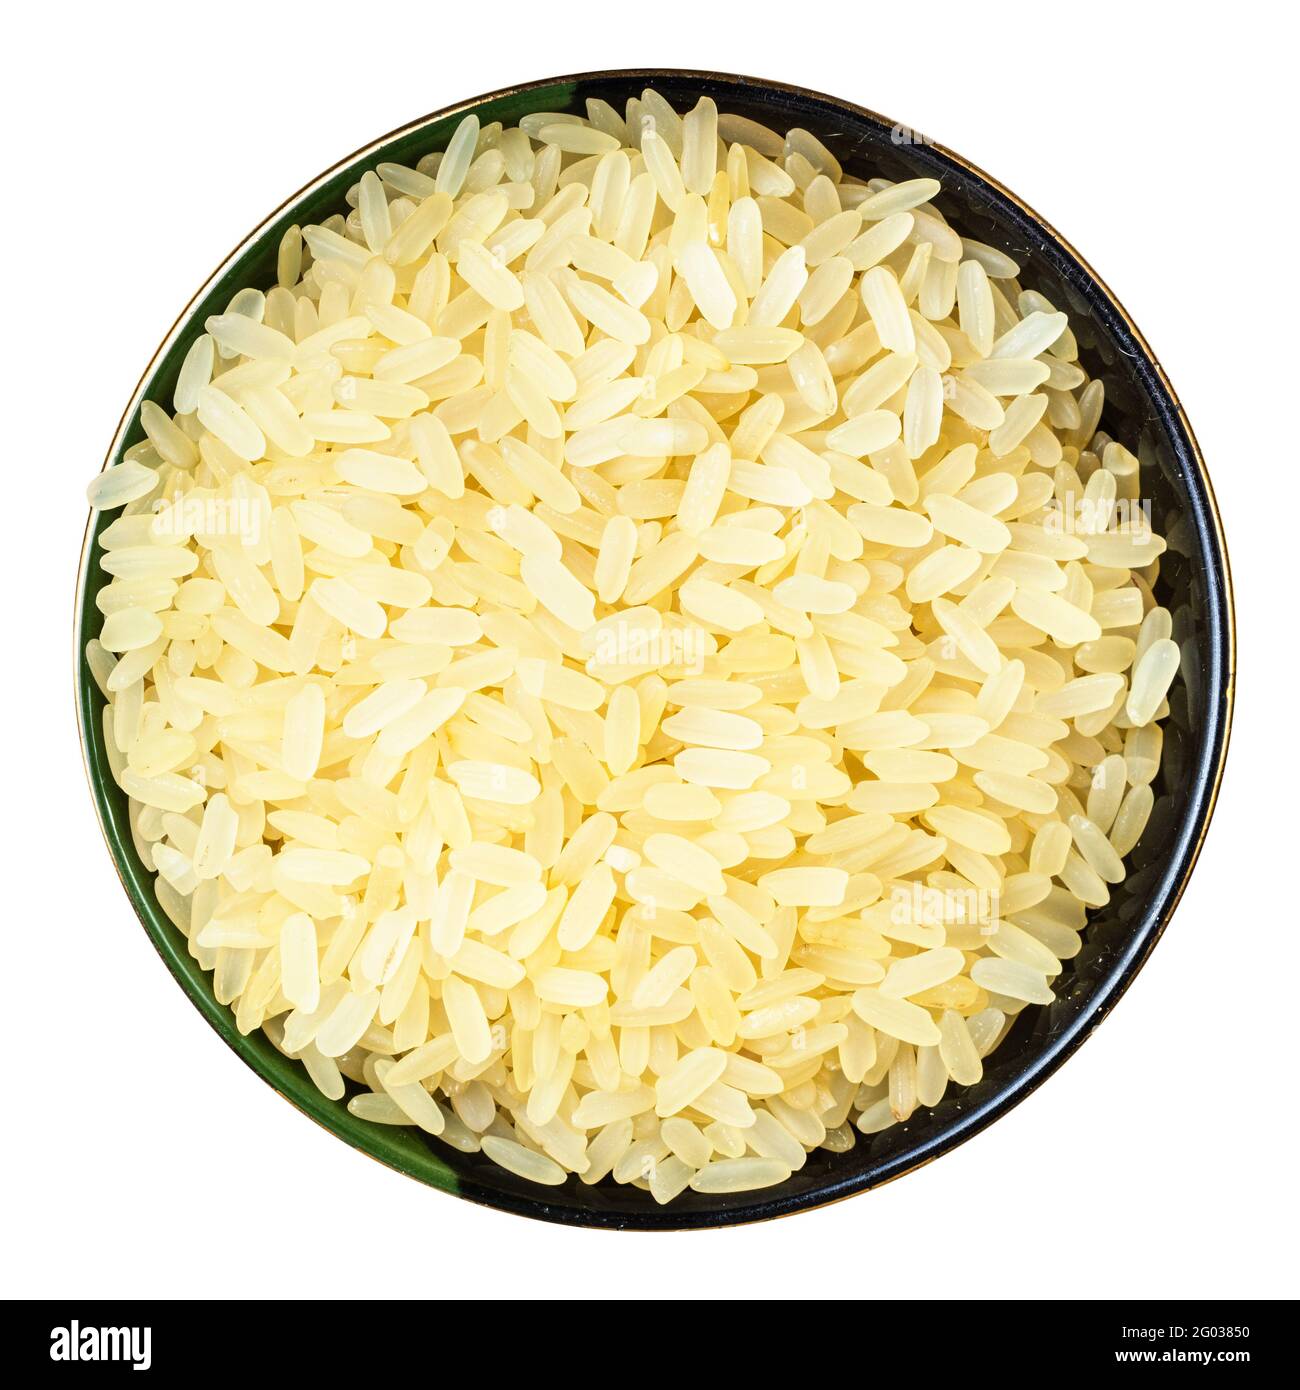 vue de dessus du riz cru étuvé dans un bol rond isolé sur fond blanc Banque D'Images